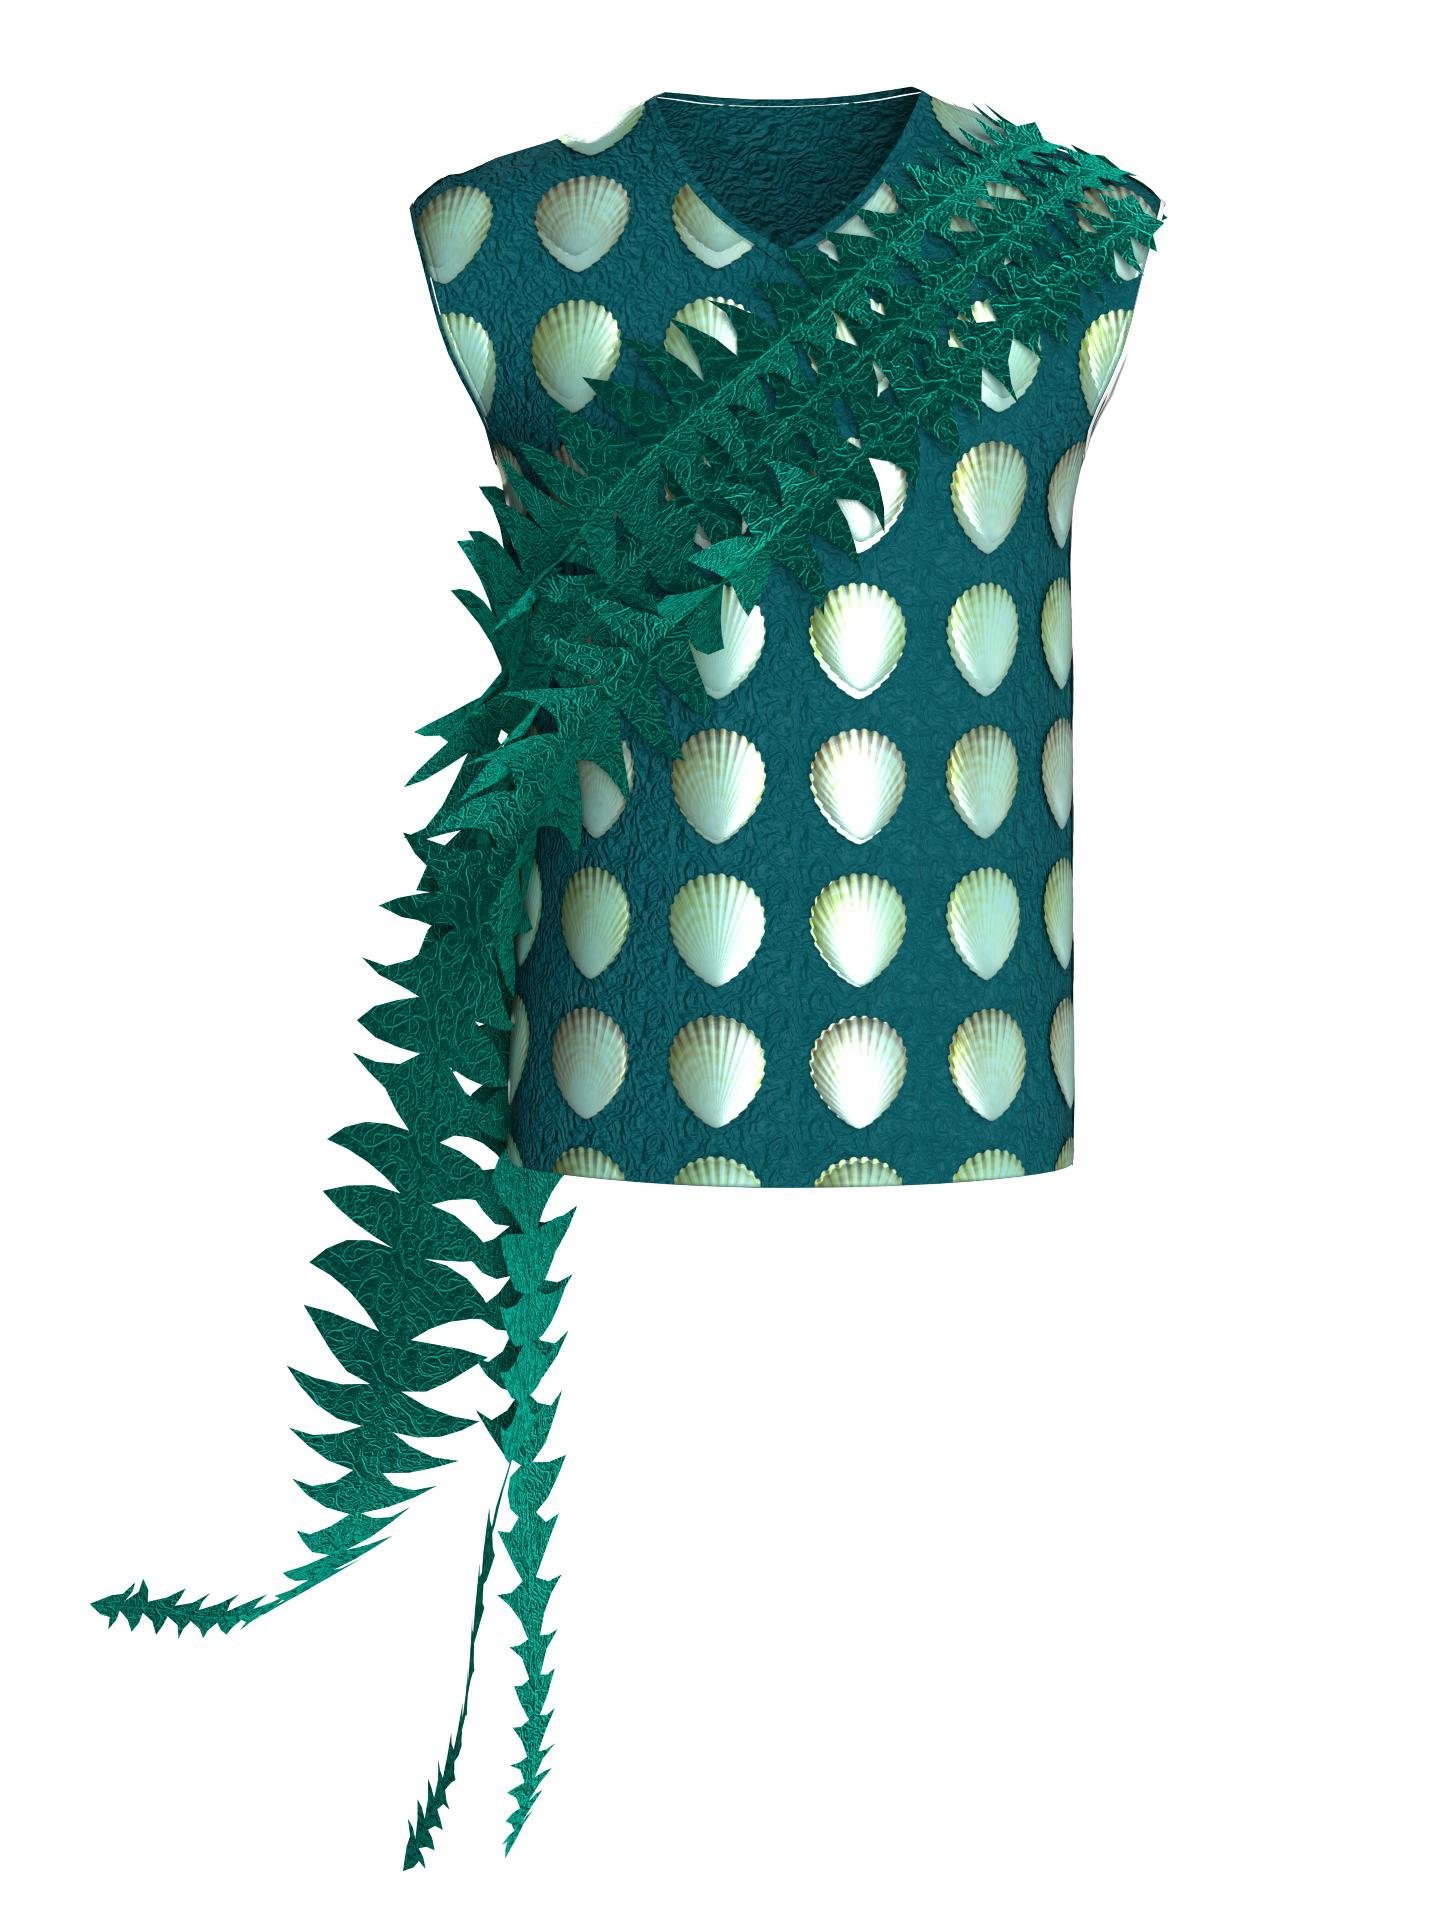 Seaweed Serenade Tank Top by SARA HASANPOUR